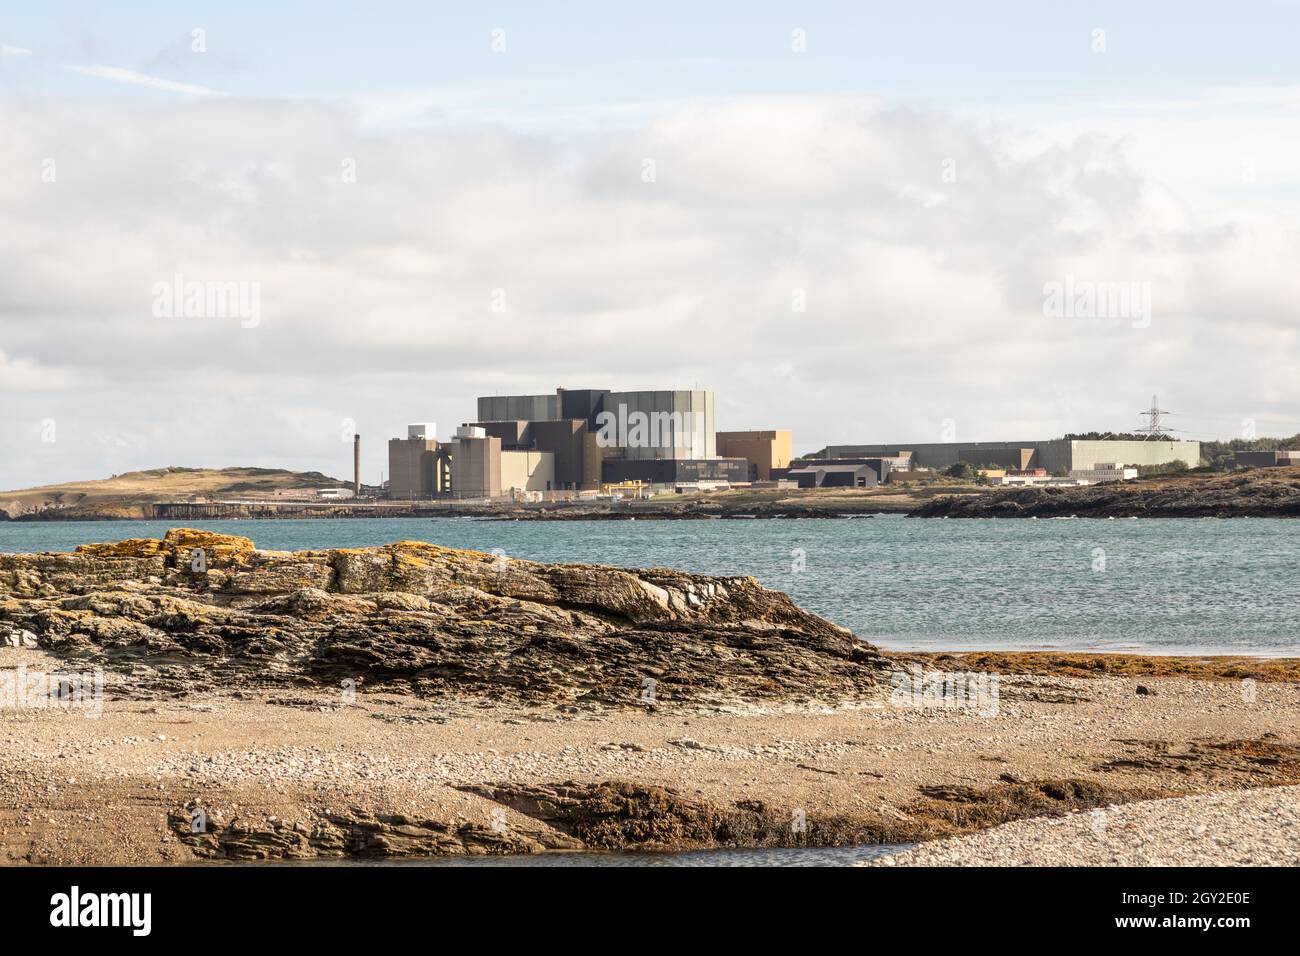 Wylfa décomposa la centrale nucléaire de magnox Anglesey pays de Galles Royaume-Uni Banque D'Images